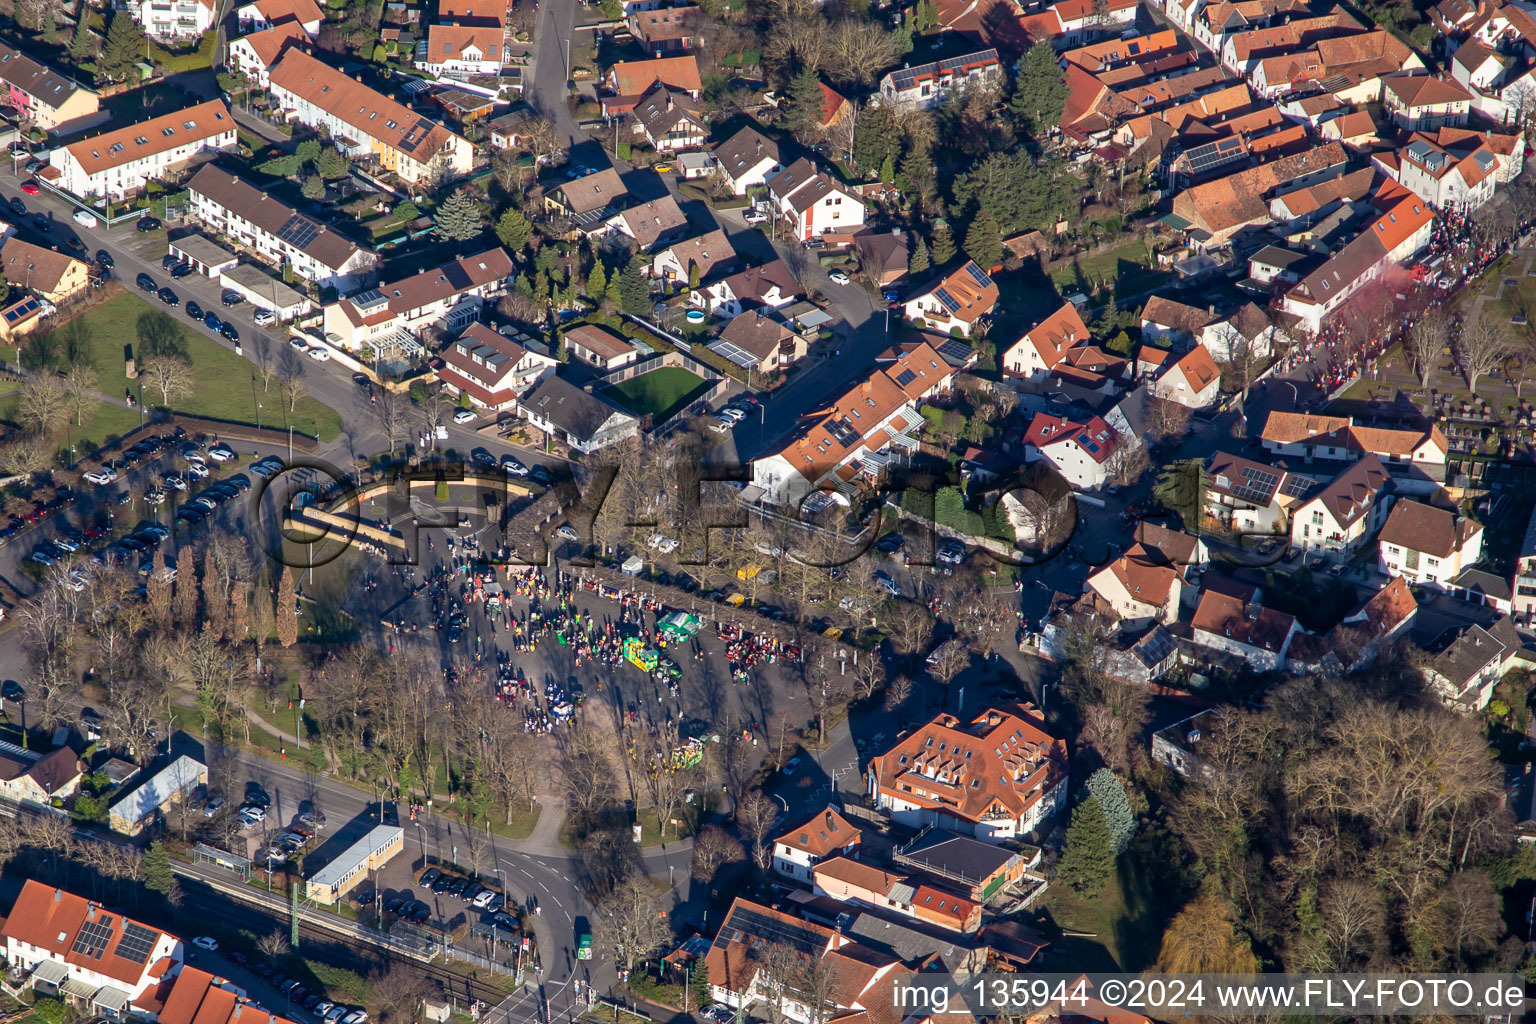 Vue aérienne de Défilé de carnaval au Bürgerpark à Jockgrim dans le département Rhénanie-Palatinat, Allemagne